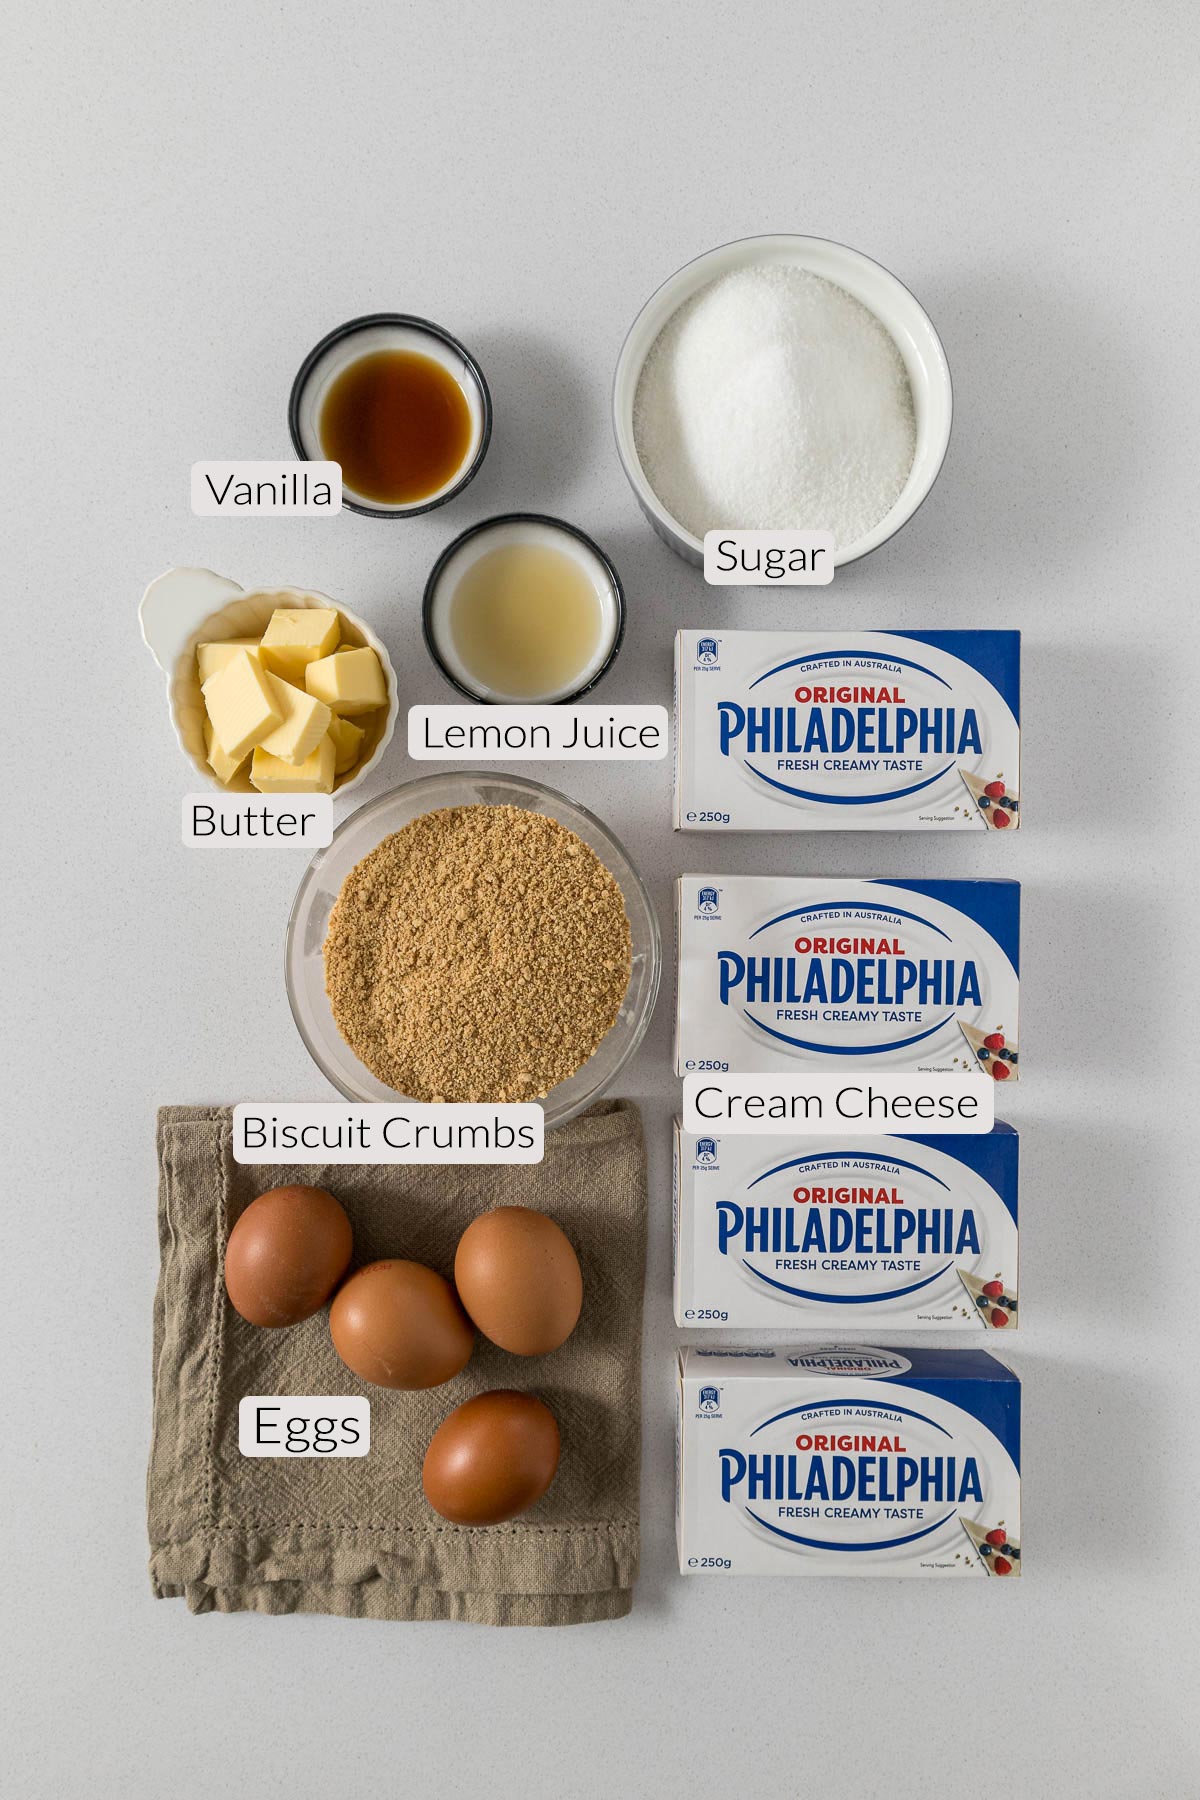 Philadelphia cheesecake ingredients - vanilla, lemon juice, sugar, biscuit crumbs, eggs, cream cheese.